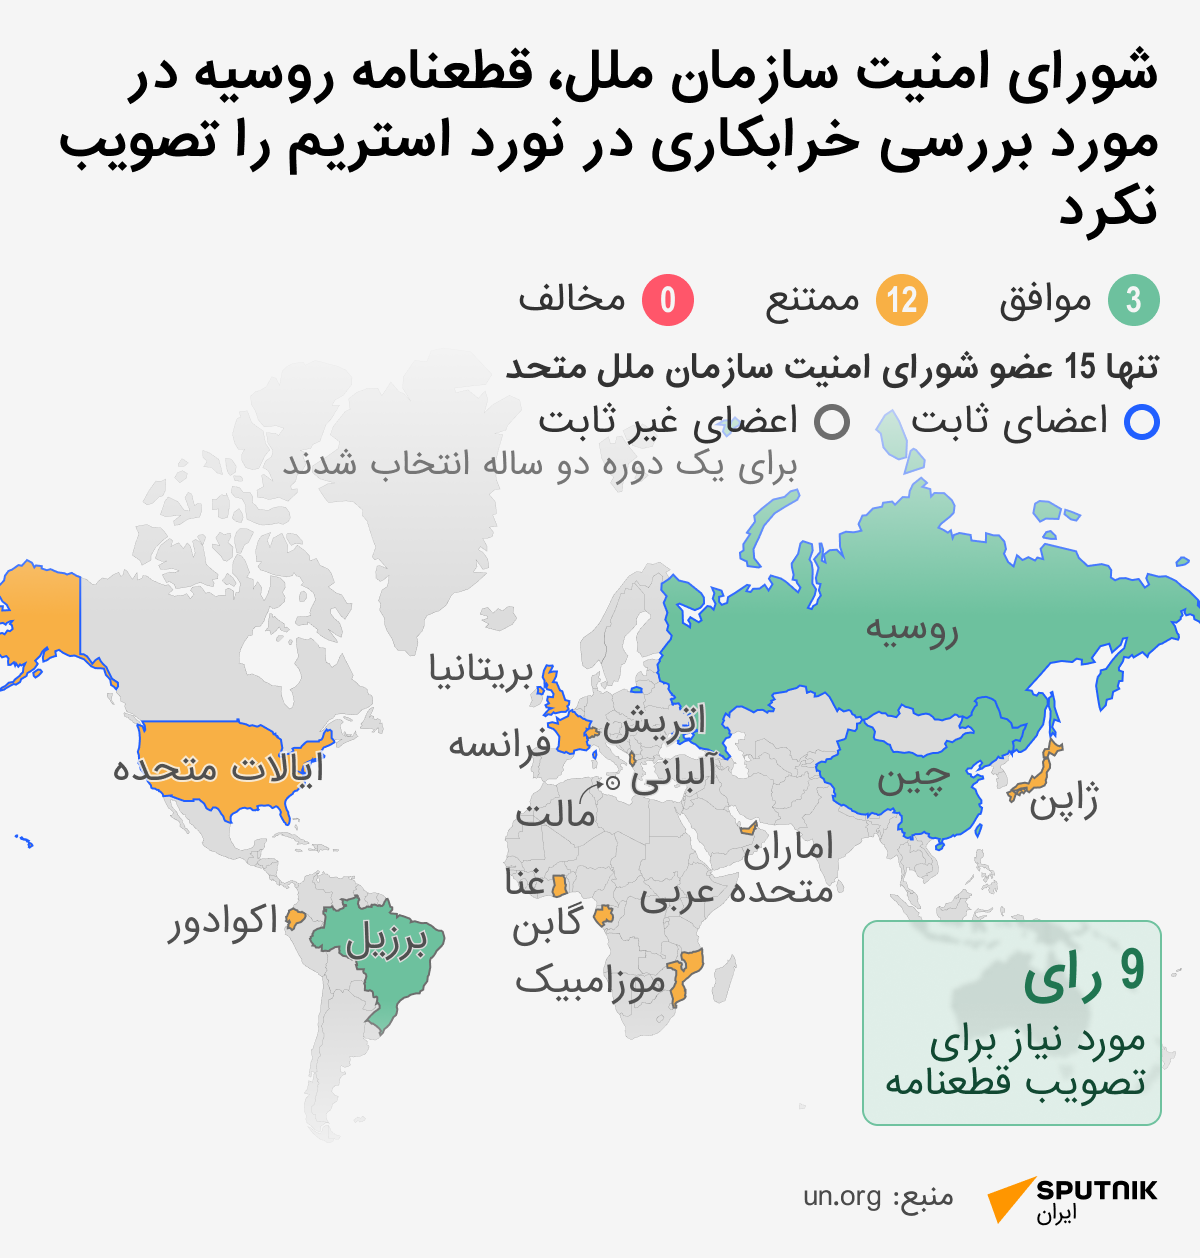 شورای امنیت سازمان ملل، قطعنامه روسیه در مورد بررسی خرابکاری در نورد استریم را تصویب نکرد - اسپوتنیک ایران  